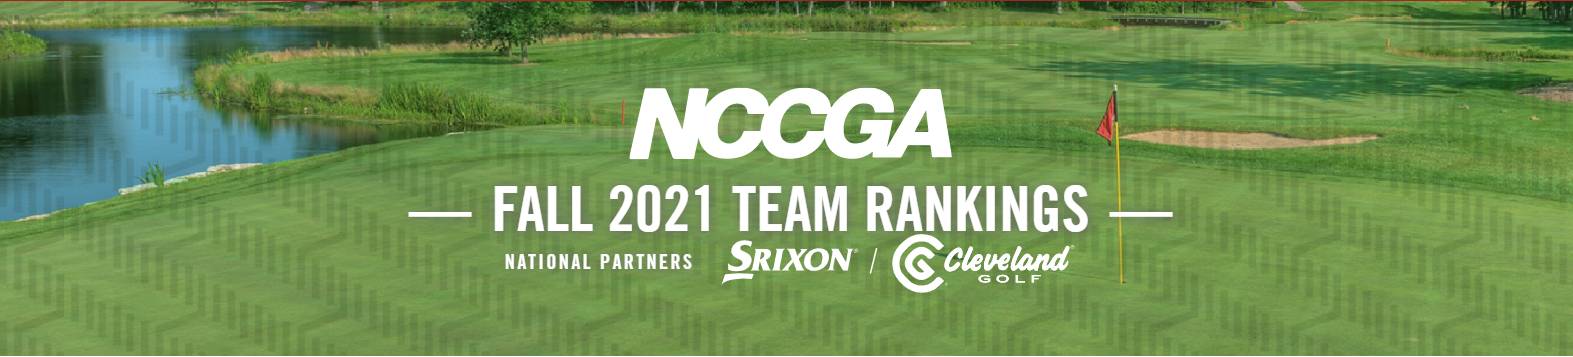 Fall 2021 NCCGA Team Rankings